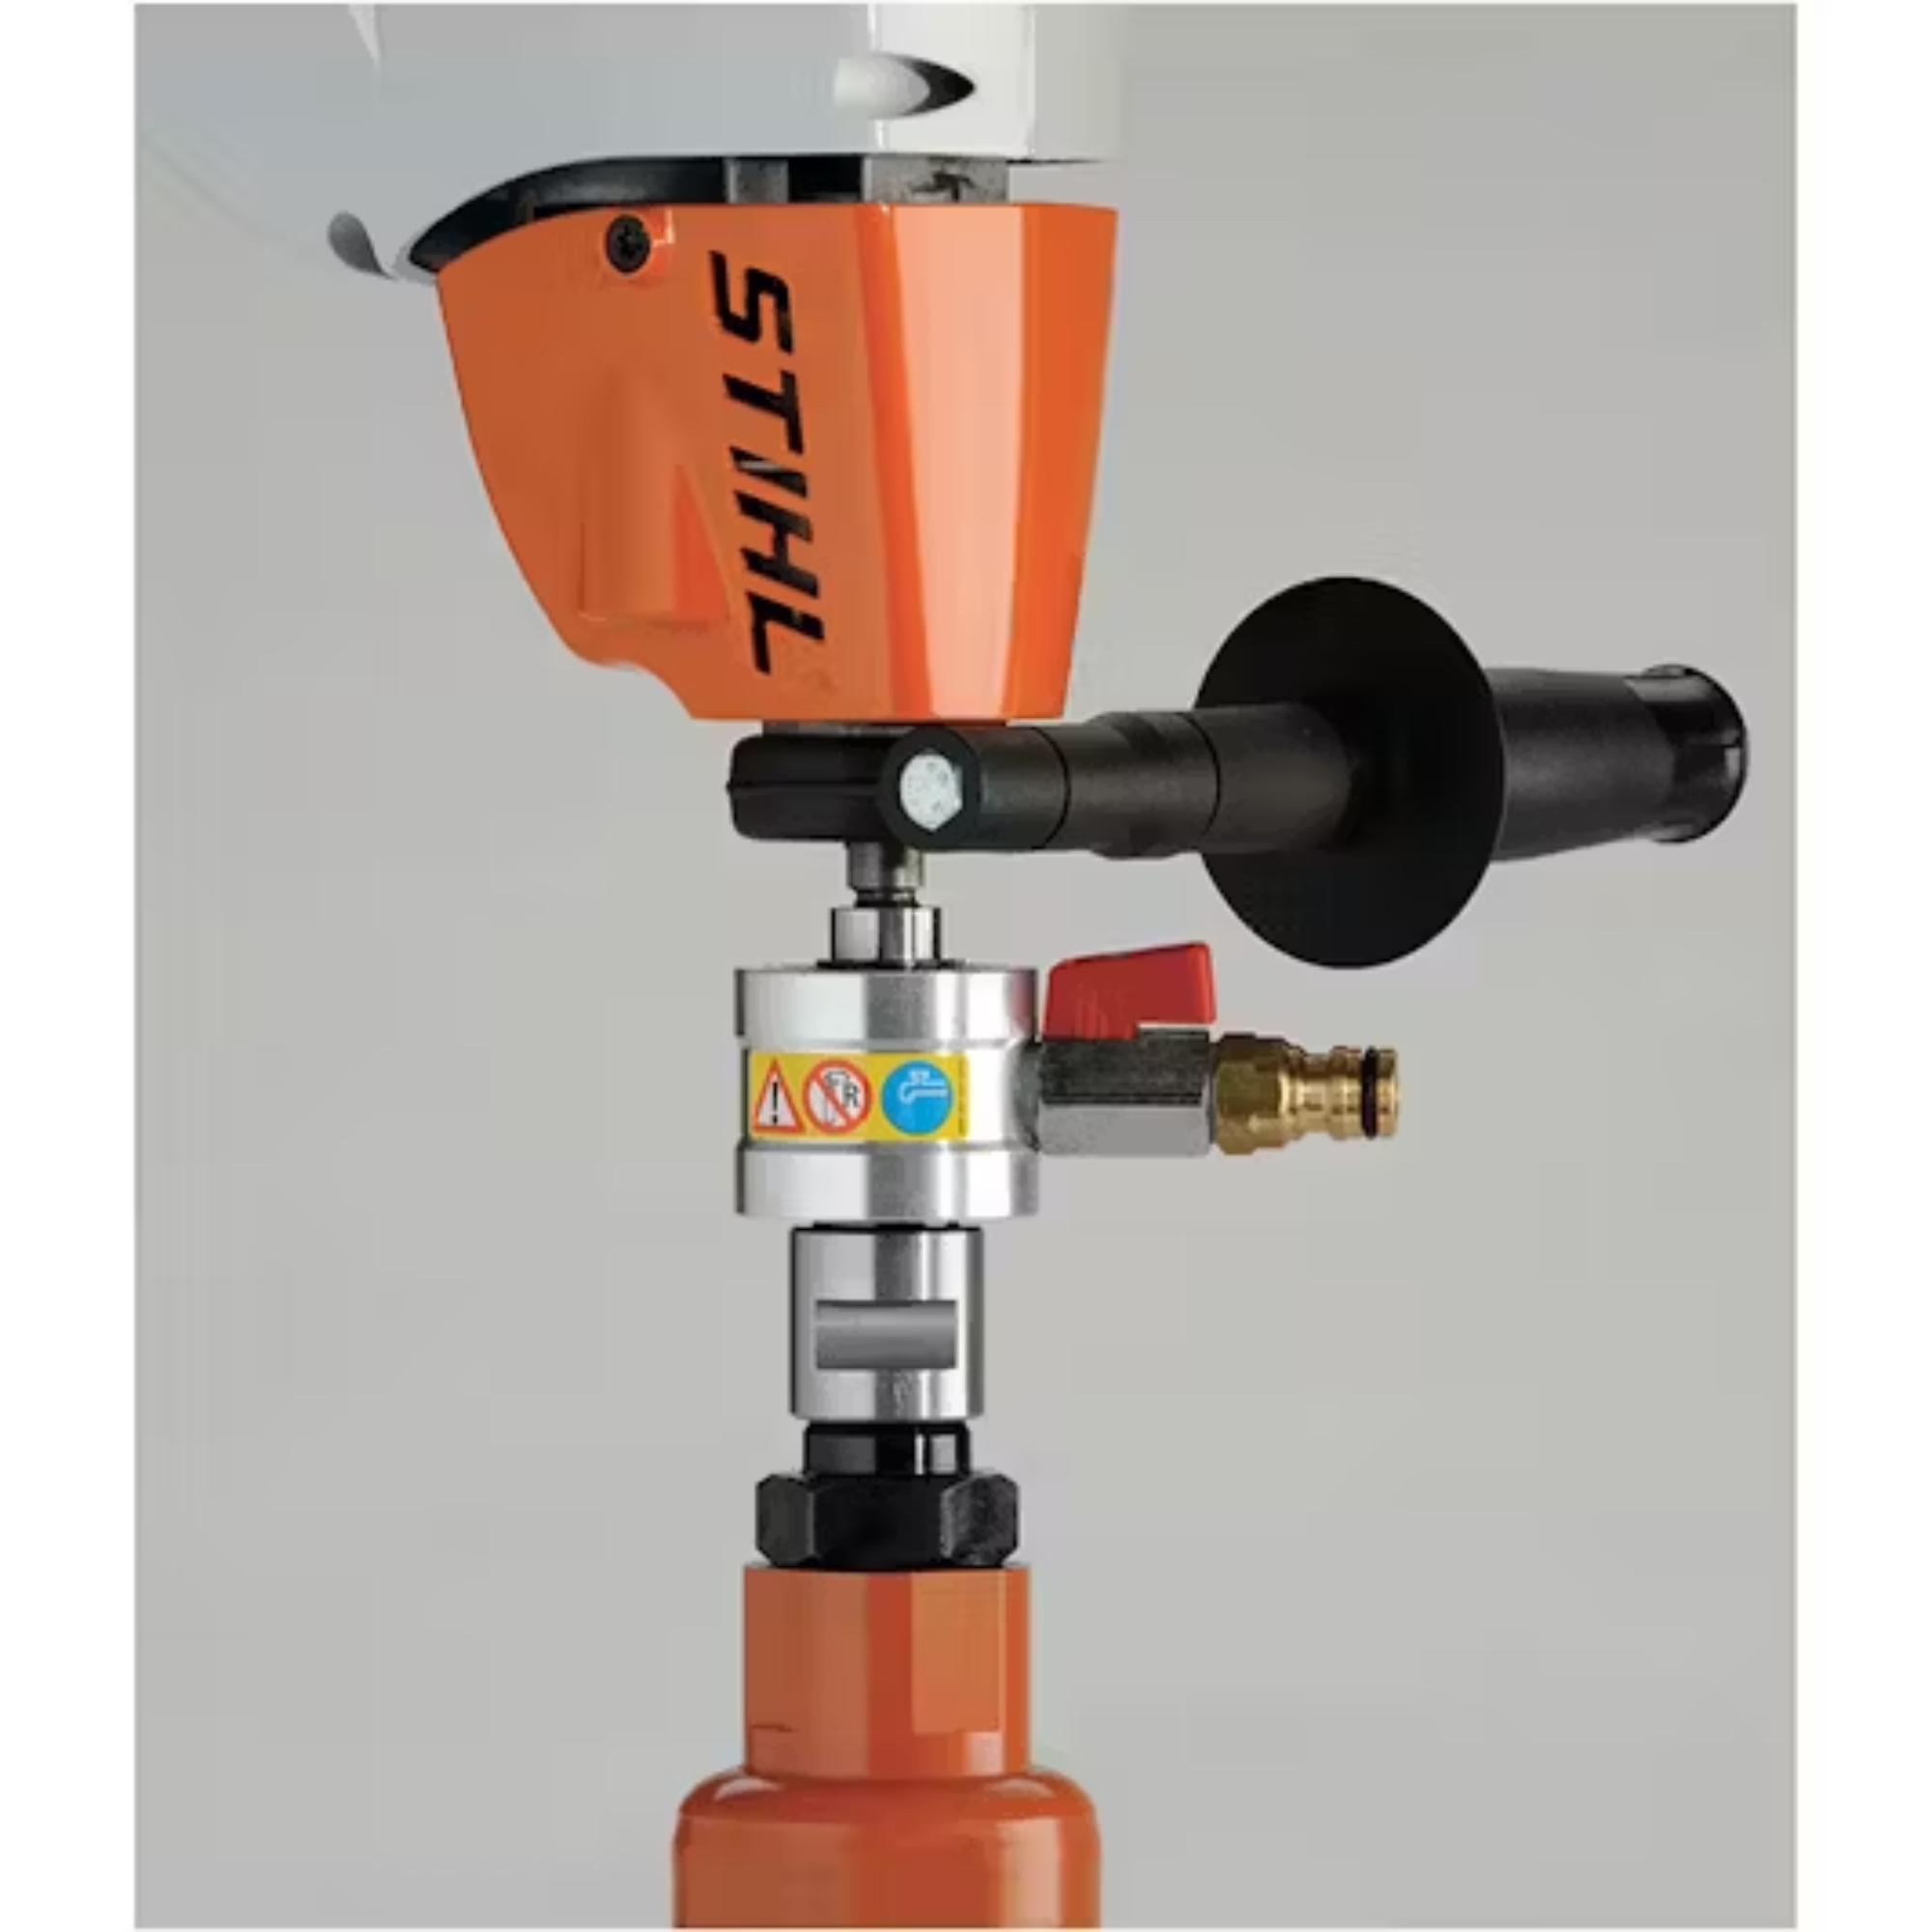 Stihl Core Drill Water Attachment | 4314 007 1006